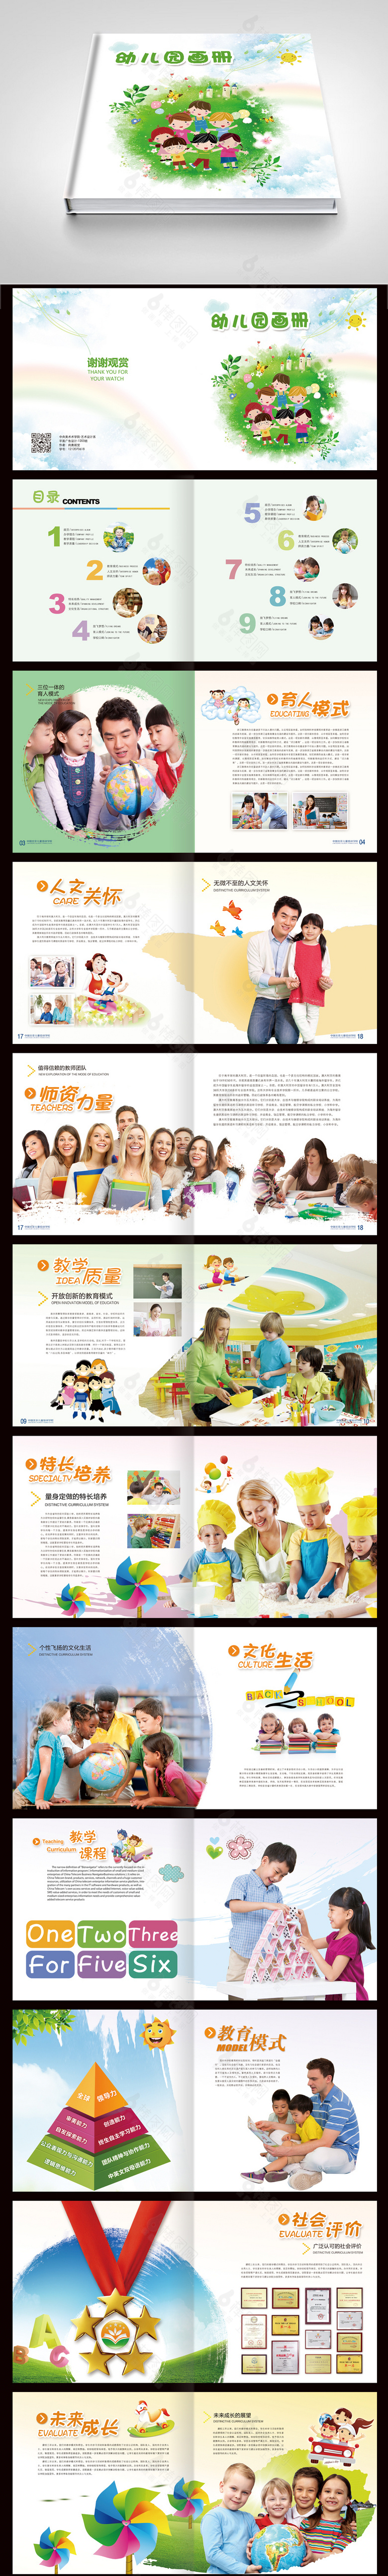 清新精美培训教育幼儿园画册设计